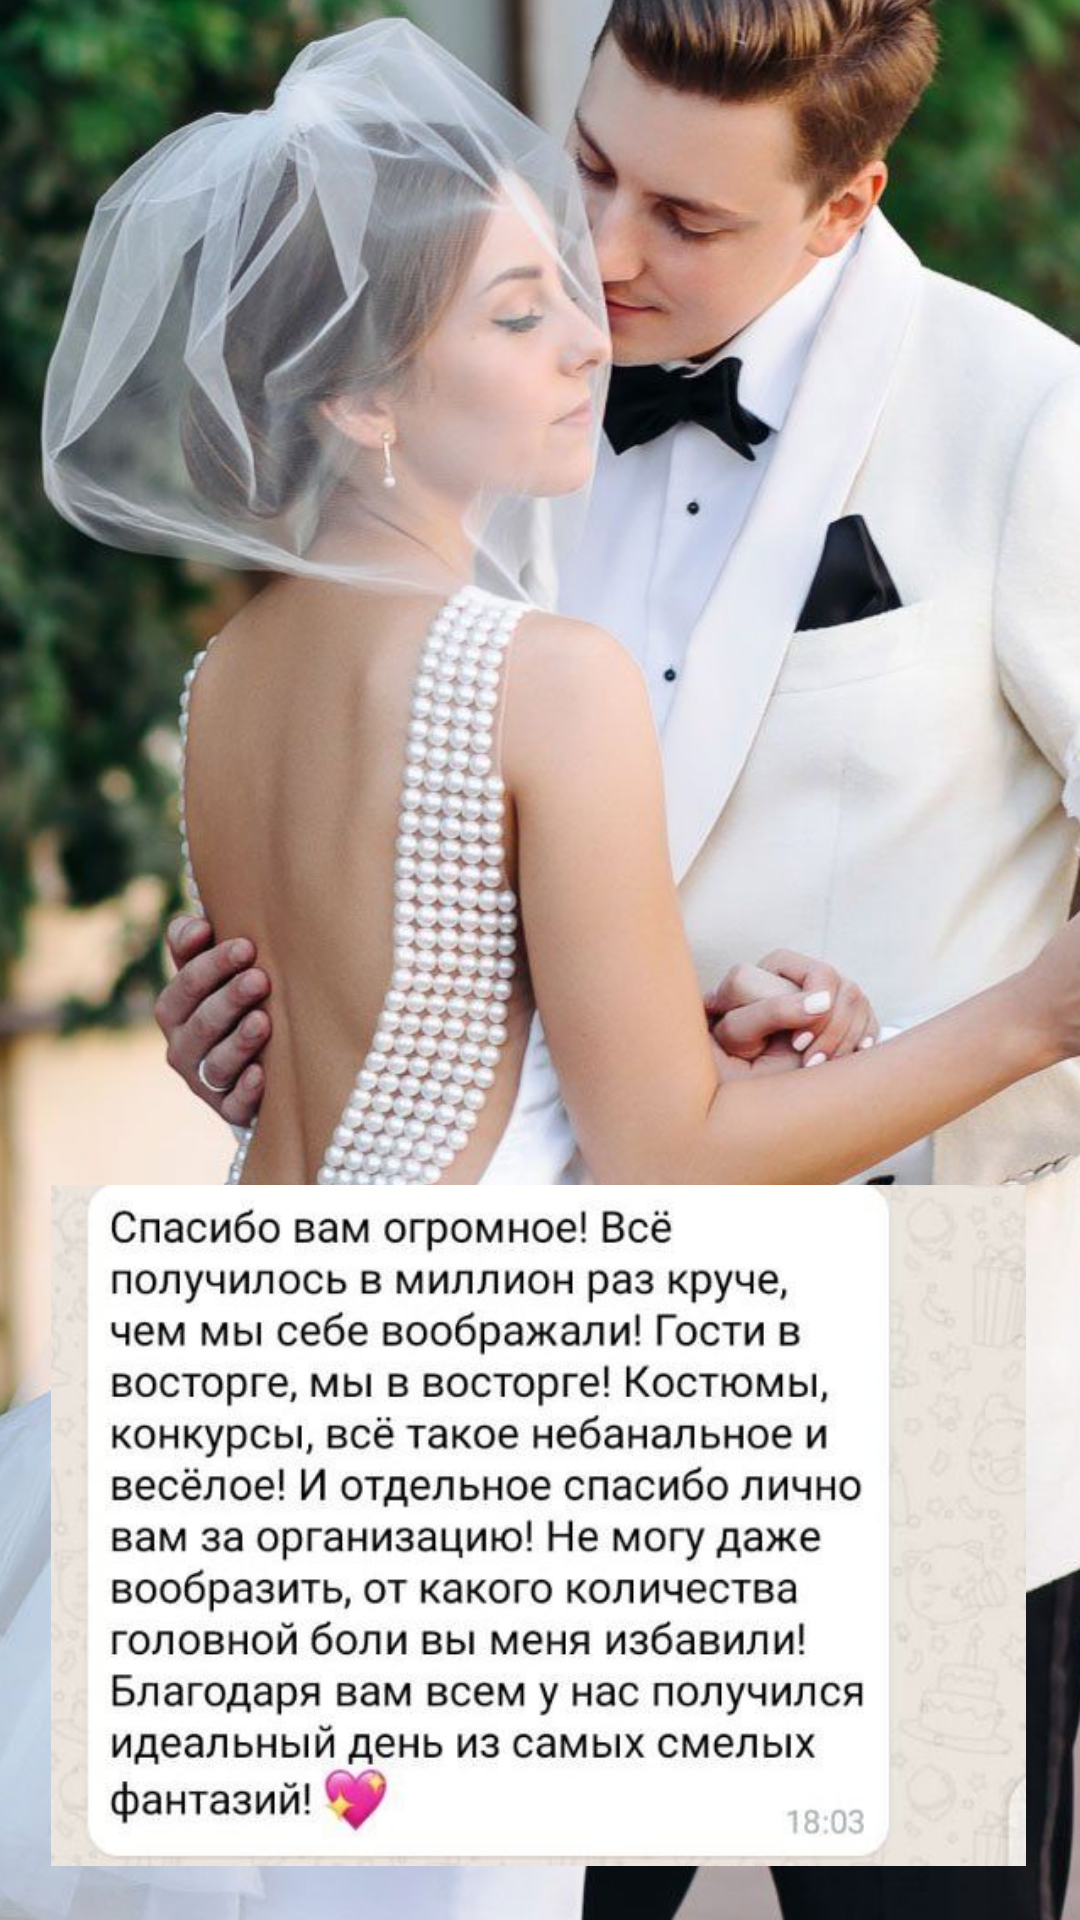 Организация свадьбы в Череповце
от компании Pandaevent